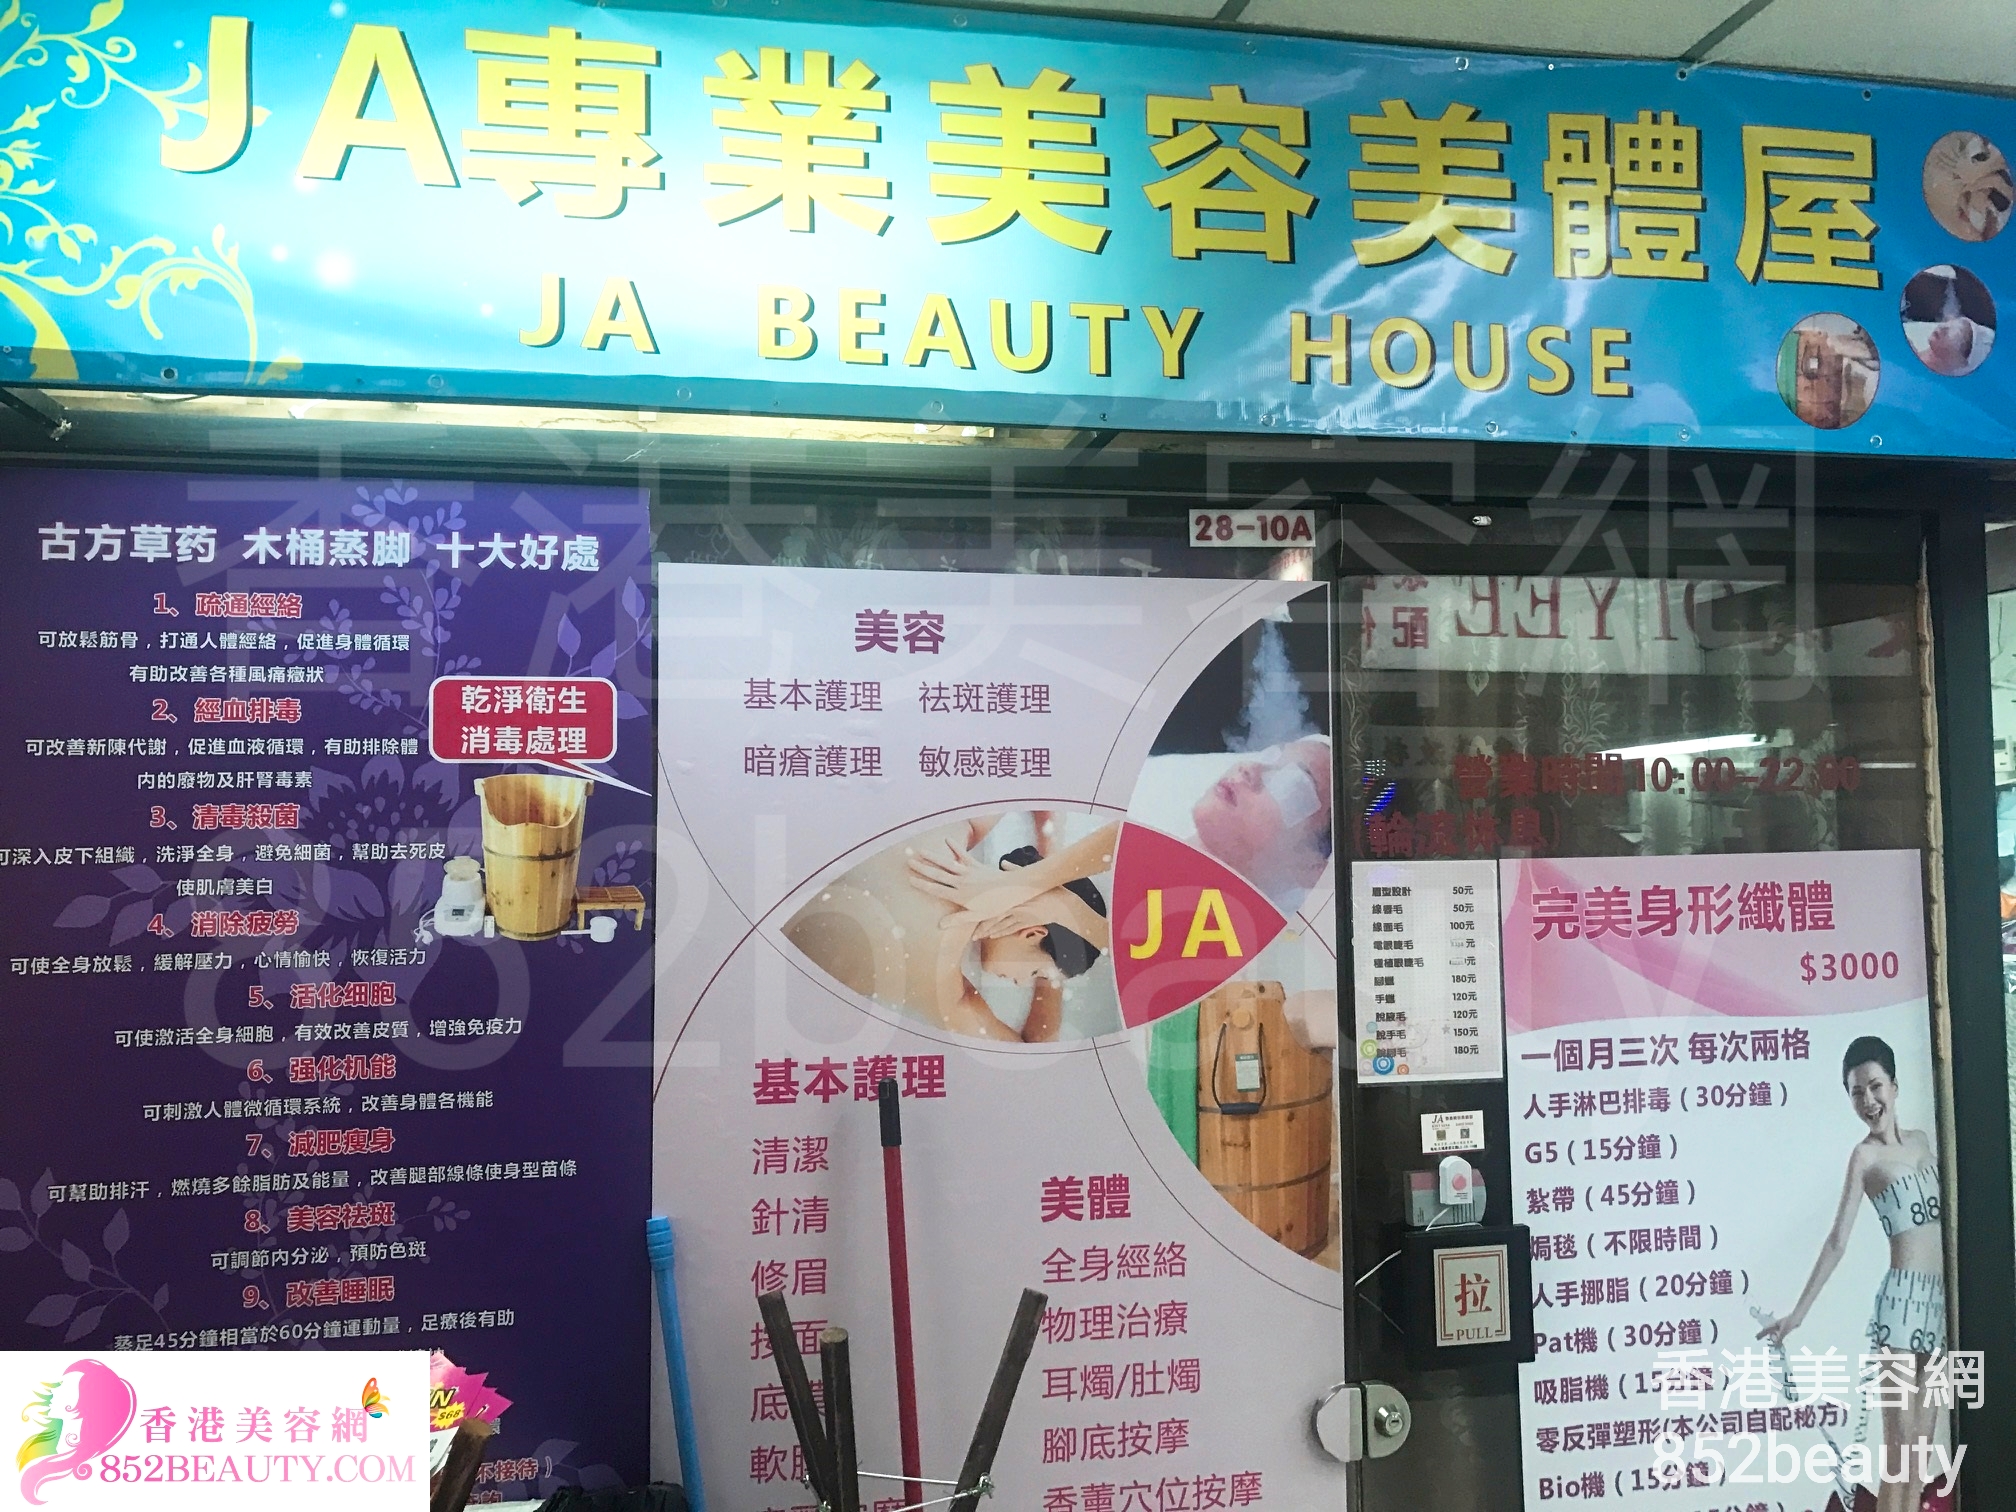 美容院: JA專業美容美體屋